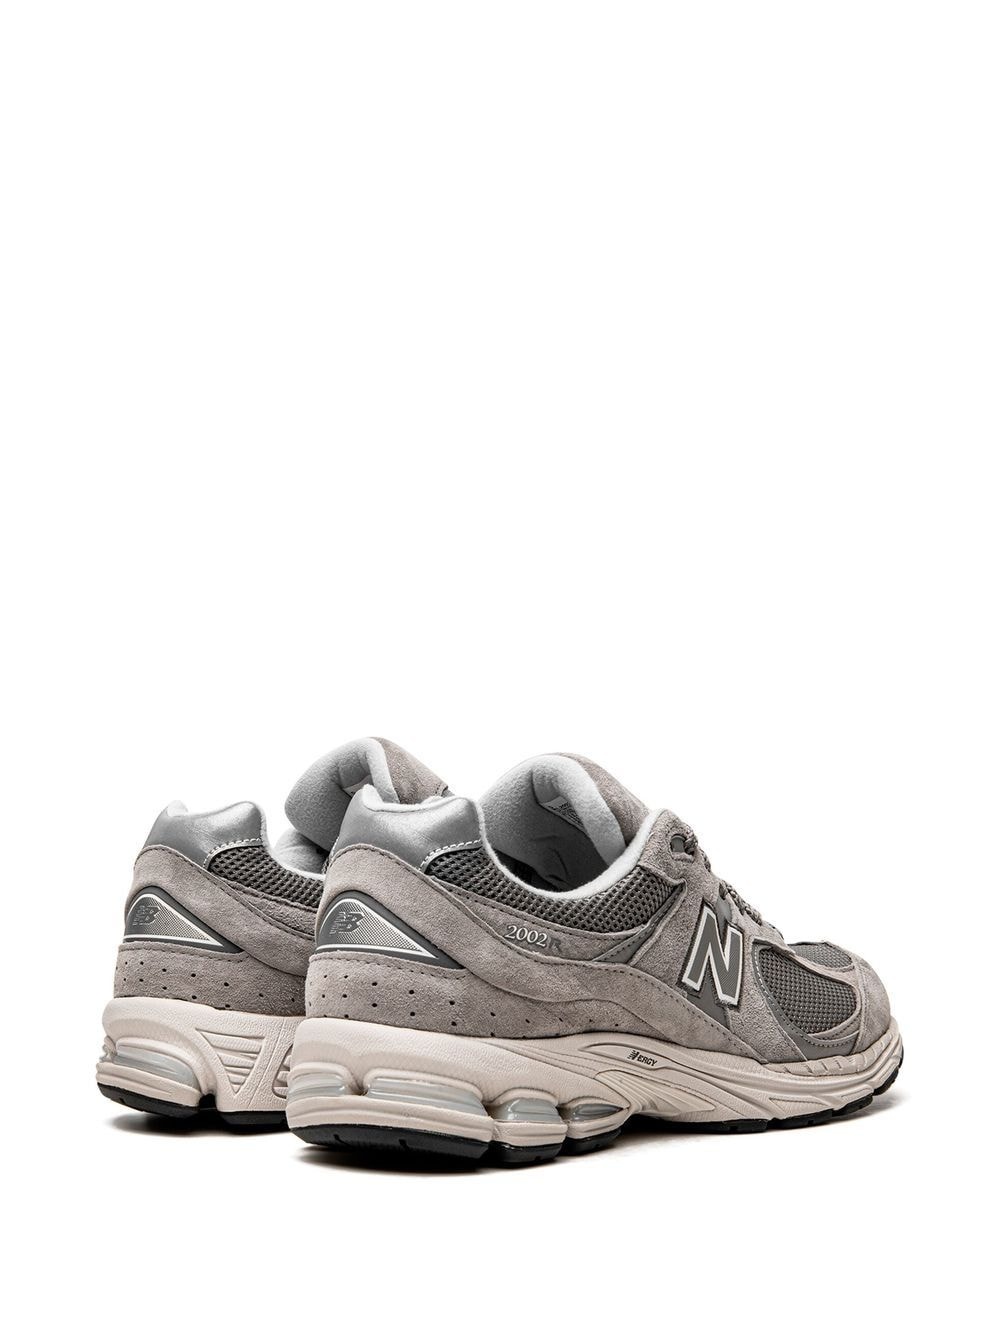 2002R "Marblehead" sneakers - 3